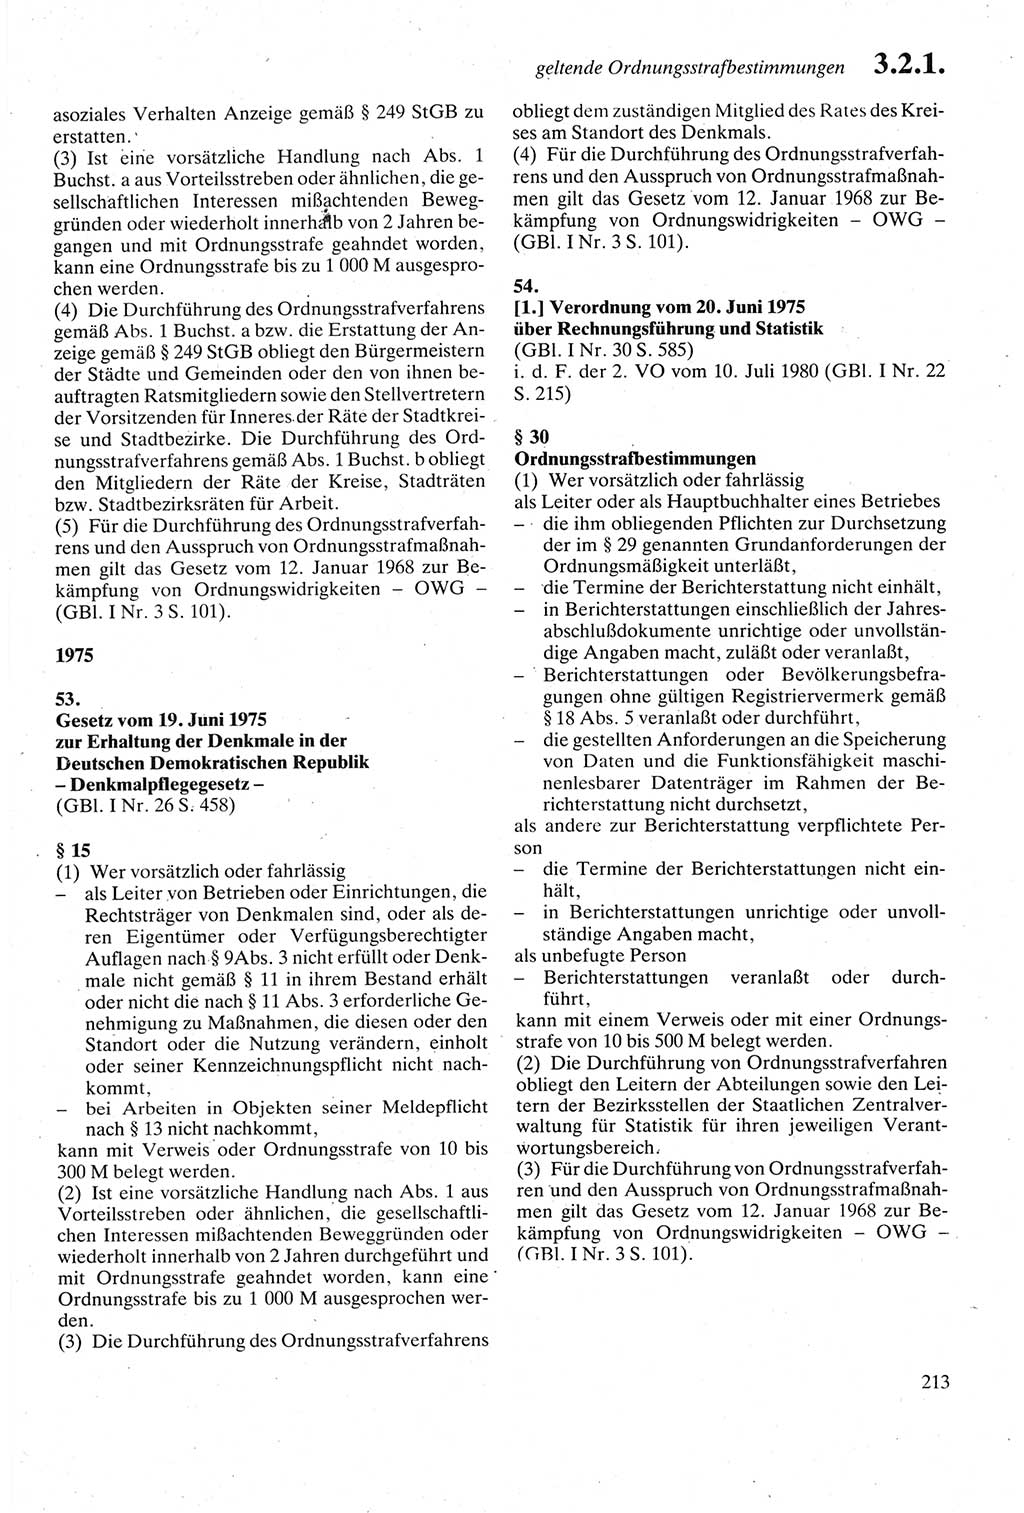 Strafgesetzbuch (StGB) der Deutschen Demokratischen Republik (DDR) sowie angrenzende Gesetze und Bestimmungen 1979, Seite 213 (StGB DDR Ges. Best. 1979, S. 213)